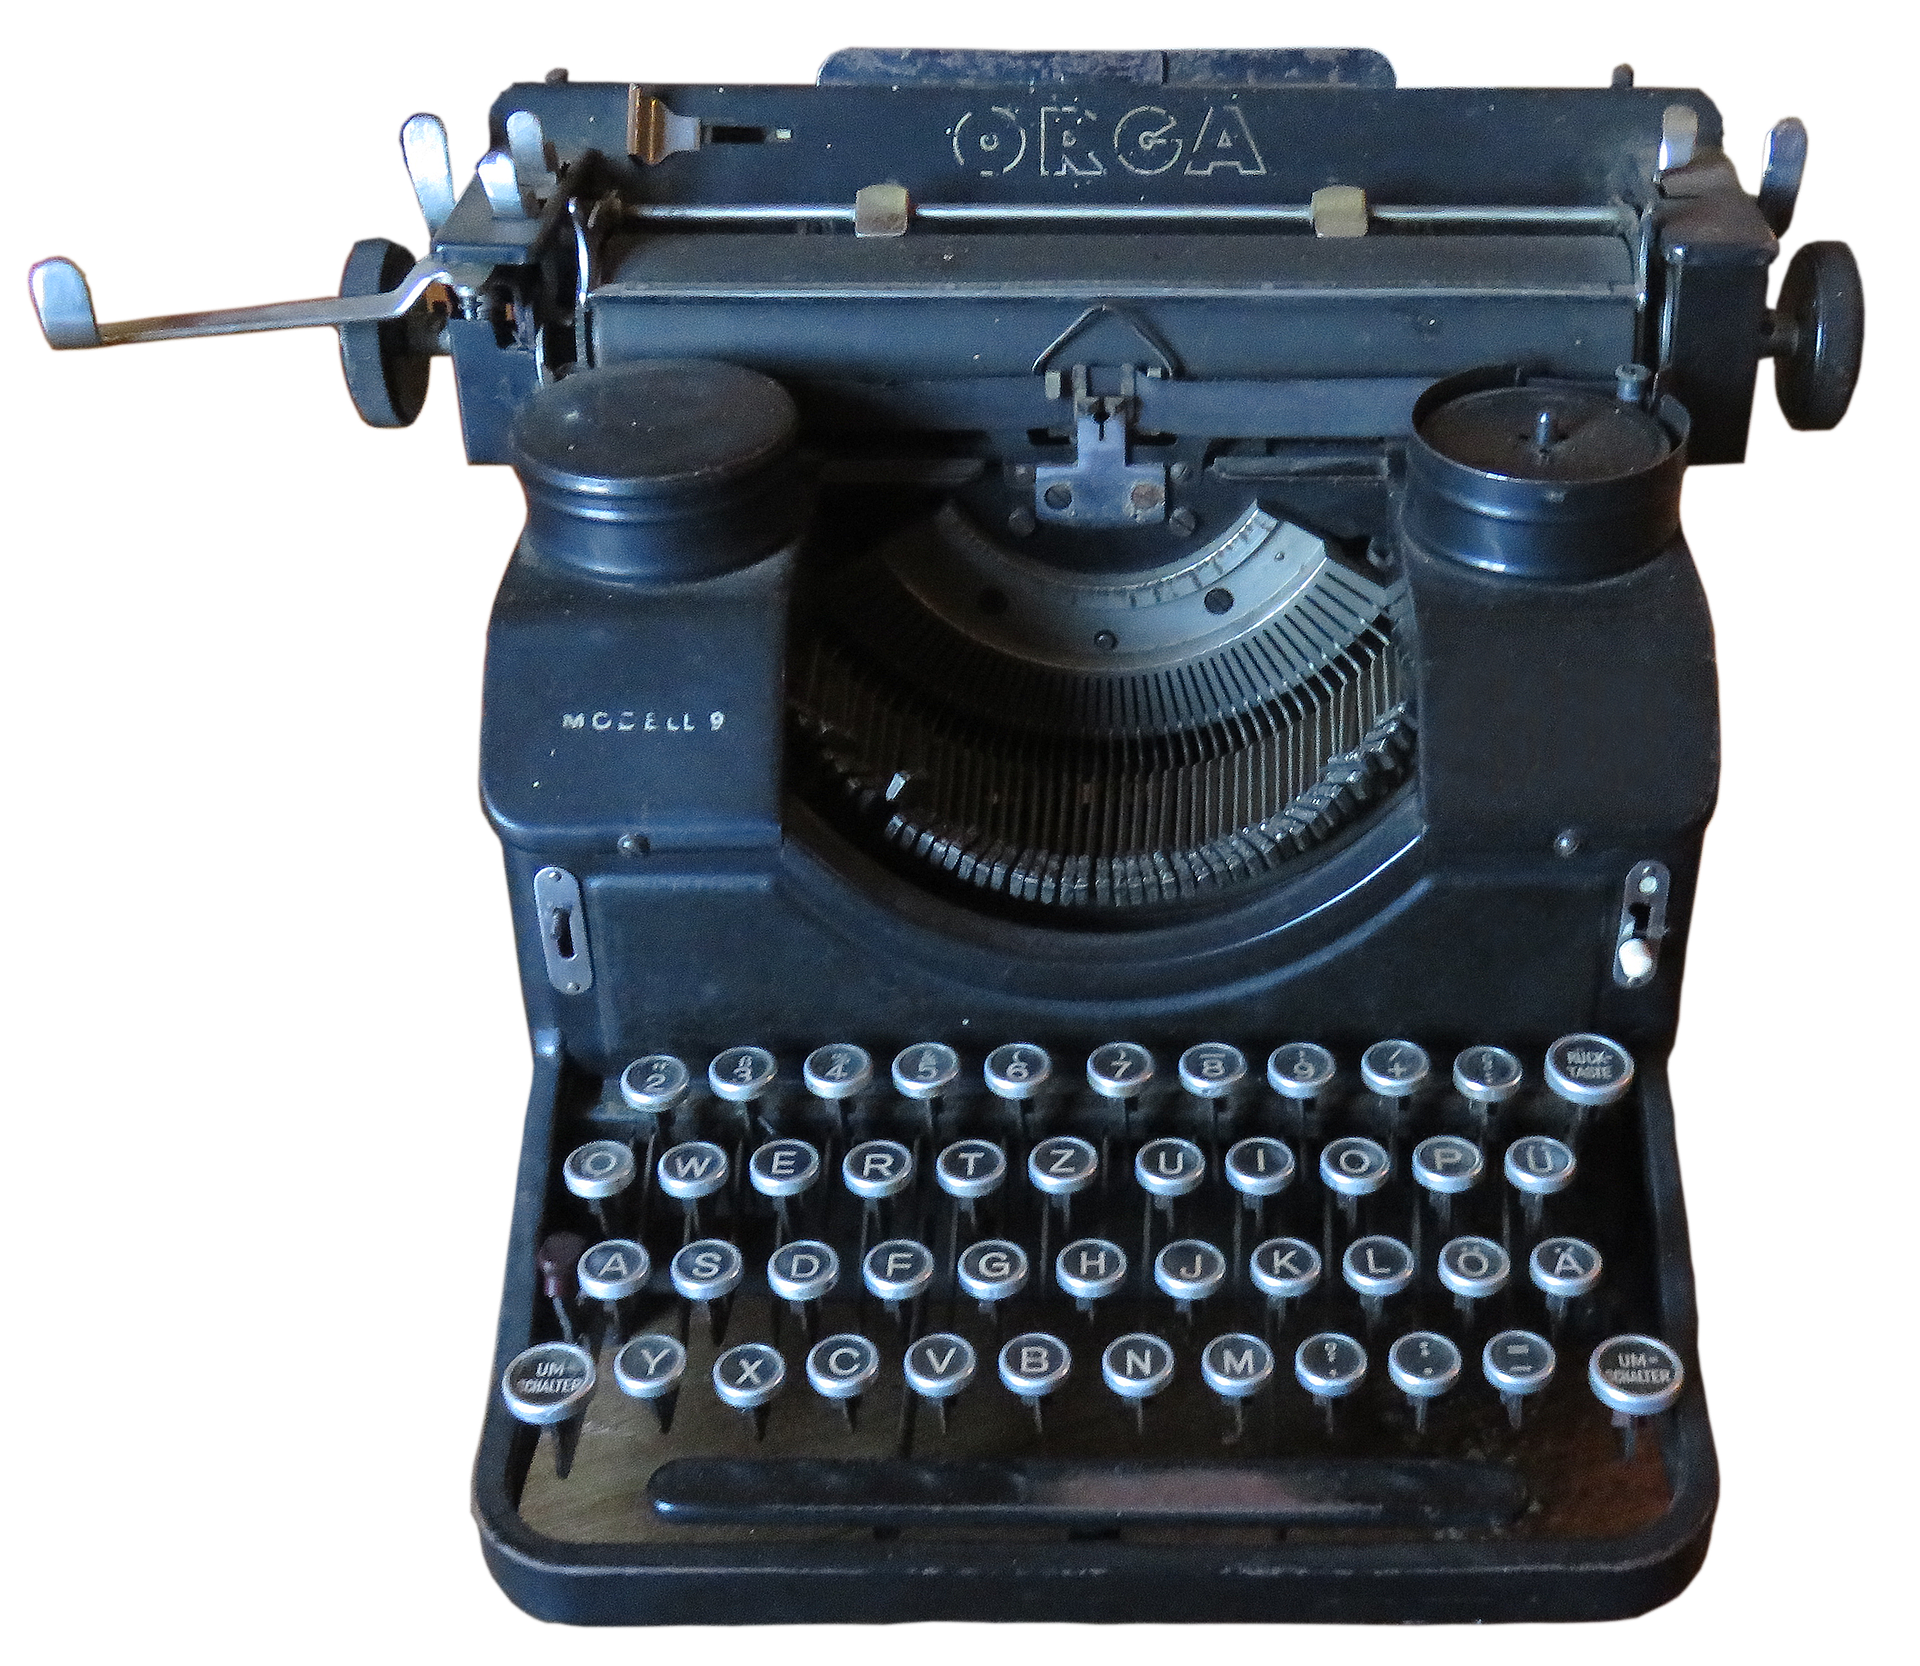 Antique Typewriter PNG Transparent Image